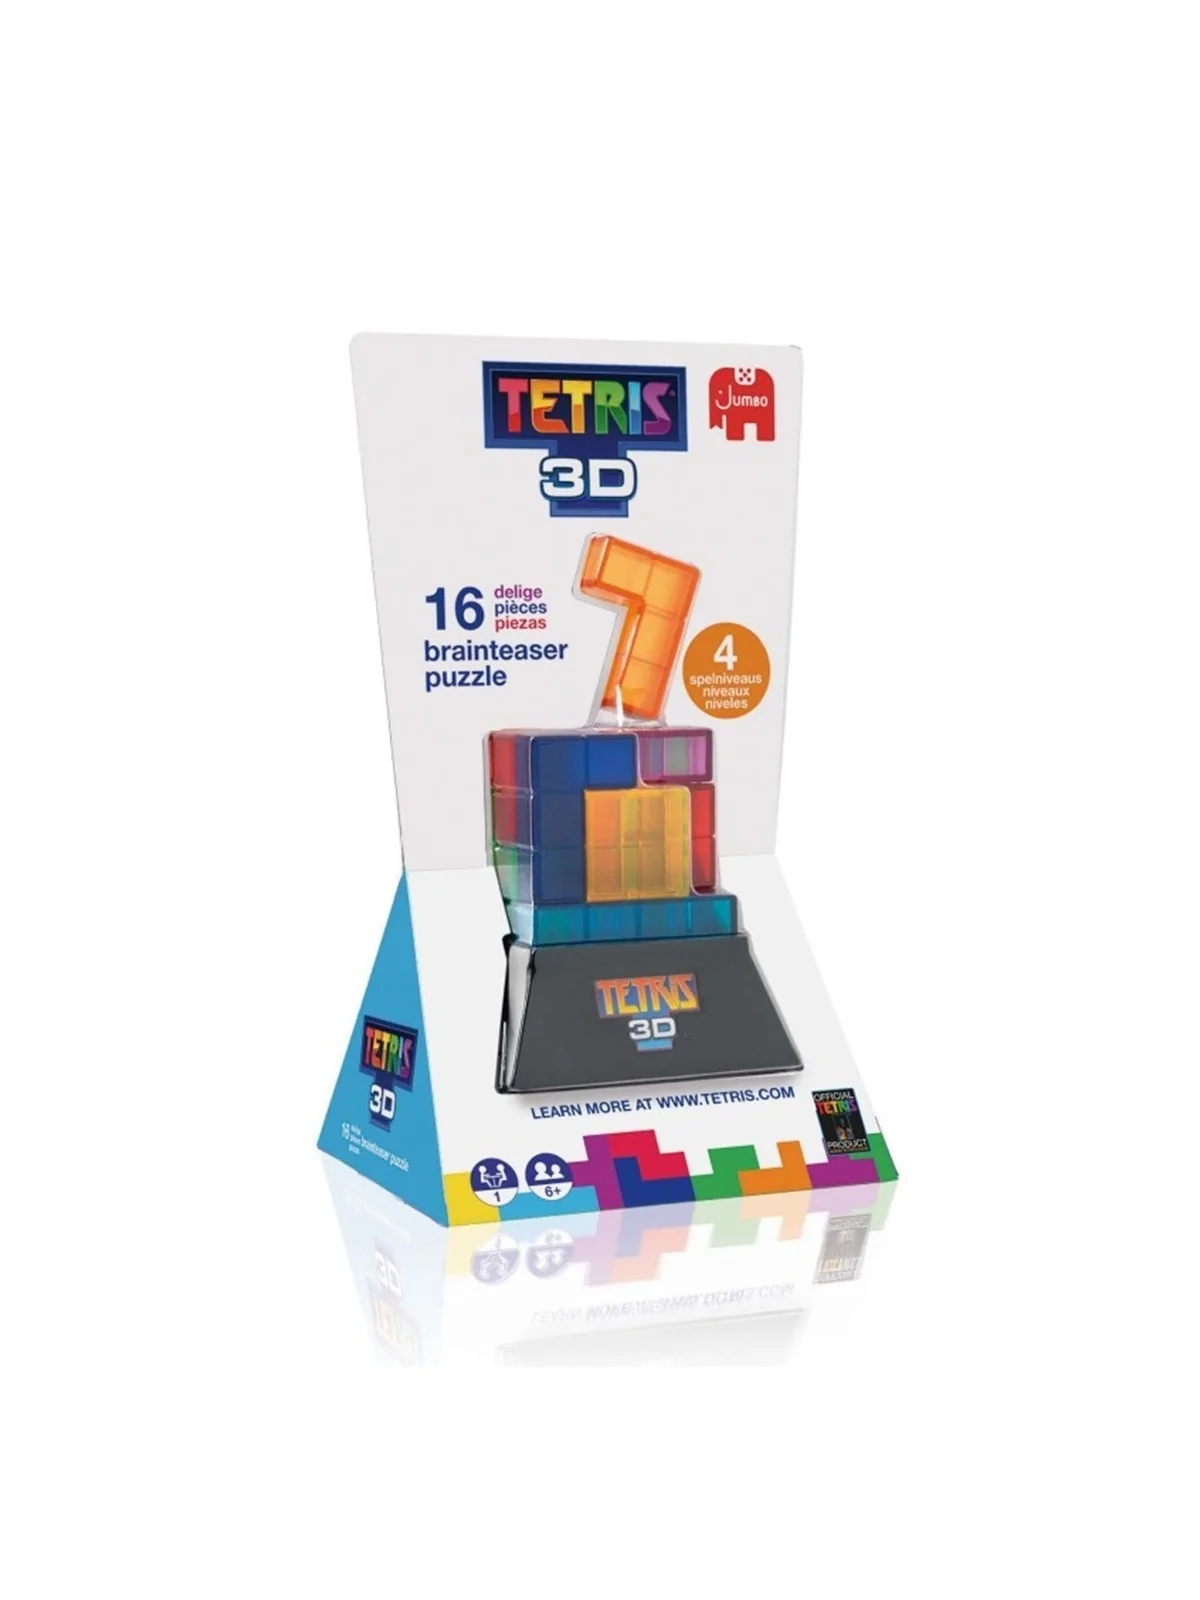 Comprar Juego mesa tetris 3d pegi 6 barato al mejor precio 15,28 € de 